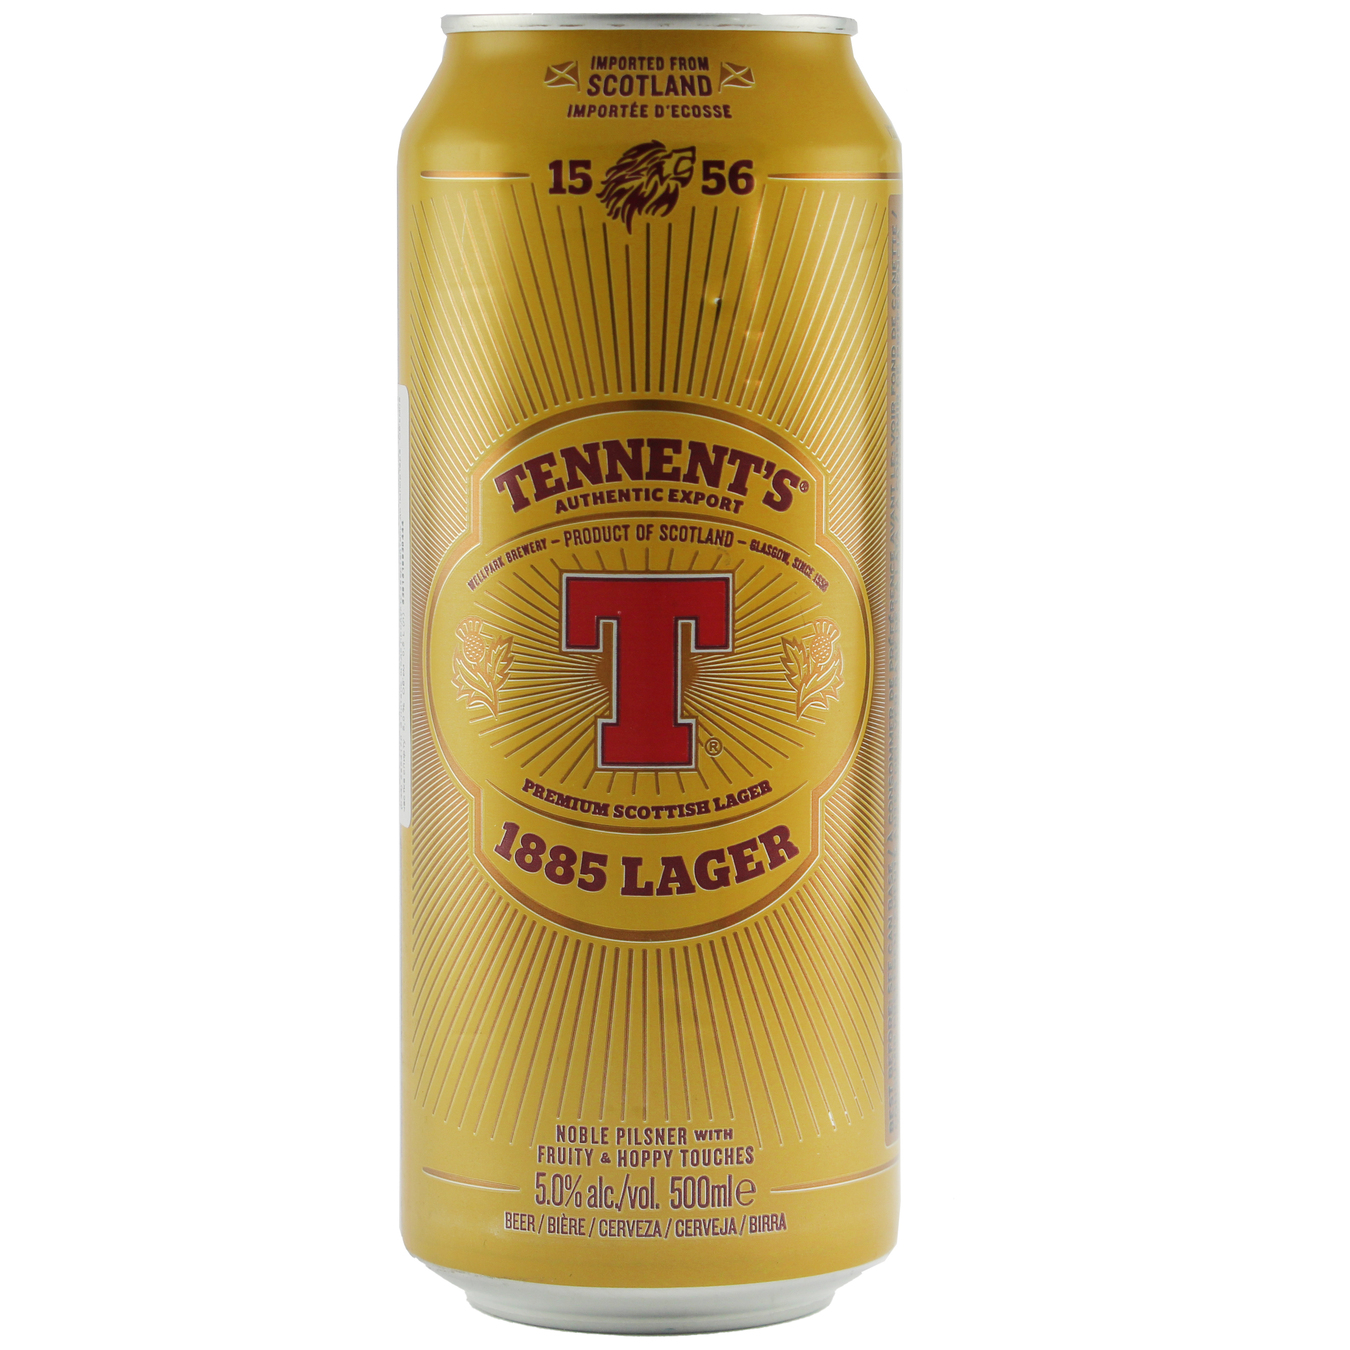 Пиво Tennent's Lager 1885 5% 0,5л